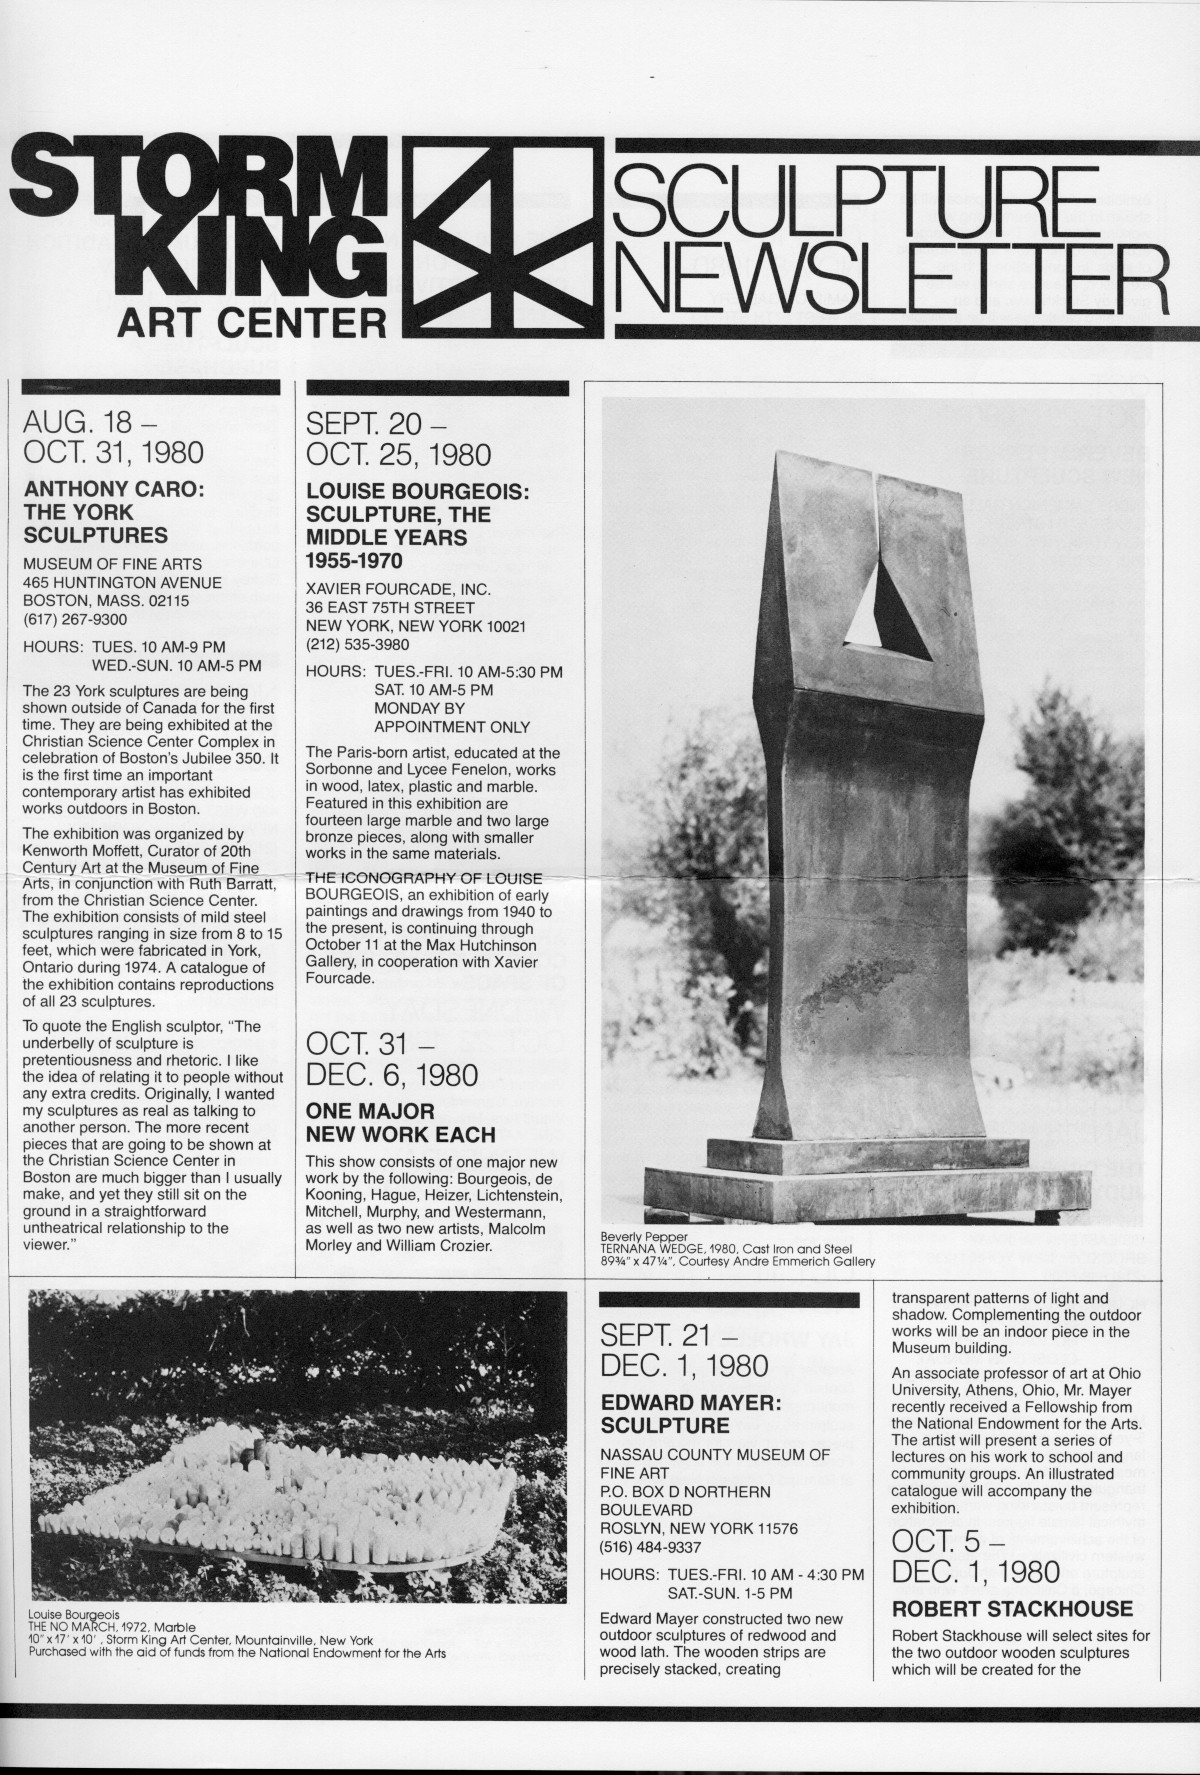 Storm King Art Center Newsletter, August - November 1980